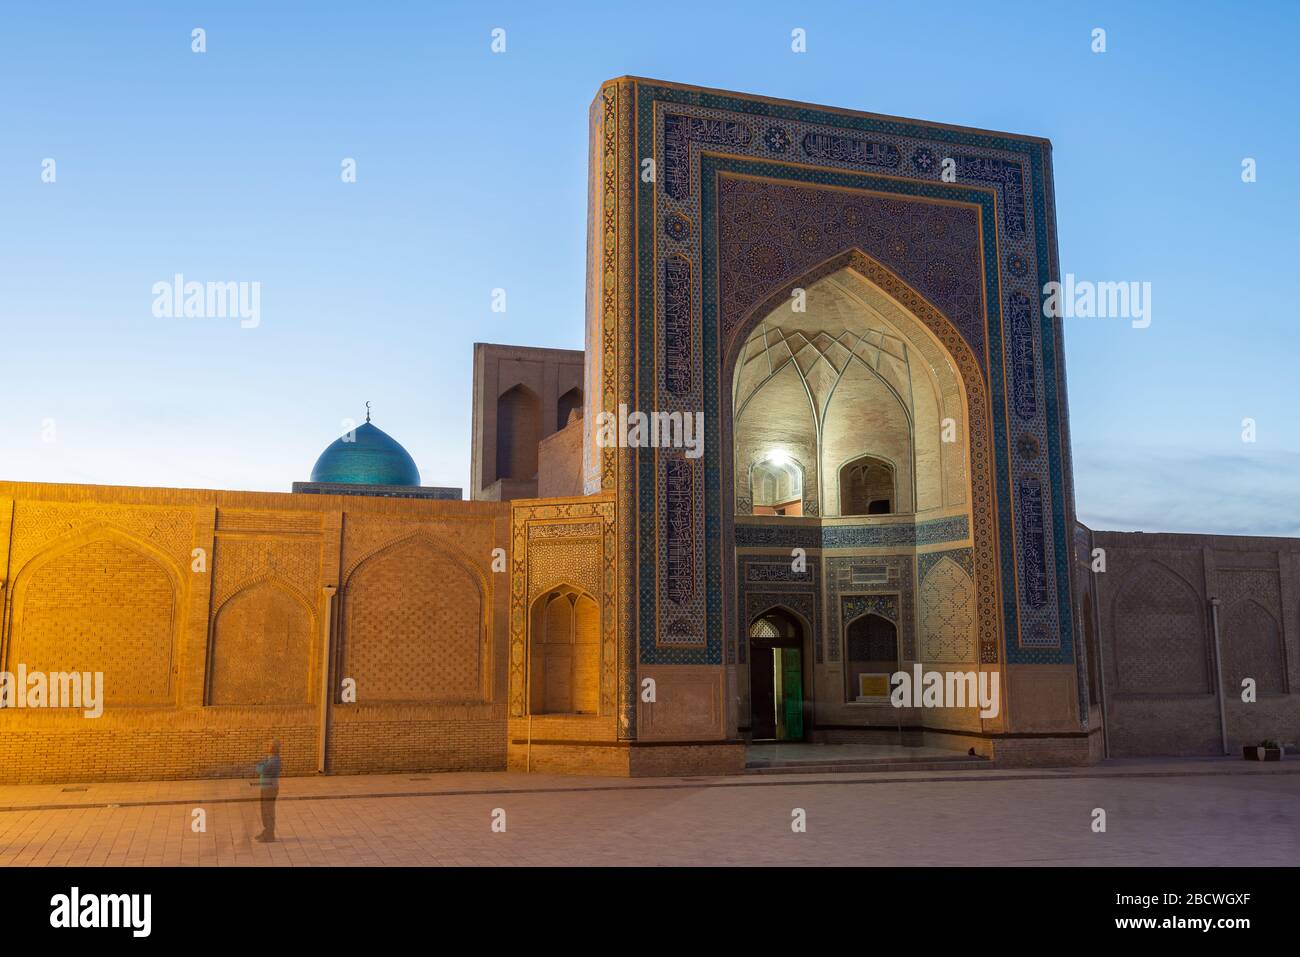 Fassade der Kalan-Moschee am Po-i-Kalan Religiösen Komplex in Buchara, Usbekistan während der blauen Stunde. Moschee iwan dekoriert im POI Kalan. Kalon Moschee. Stockfoto